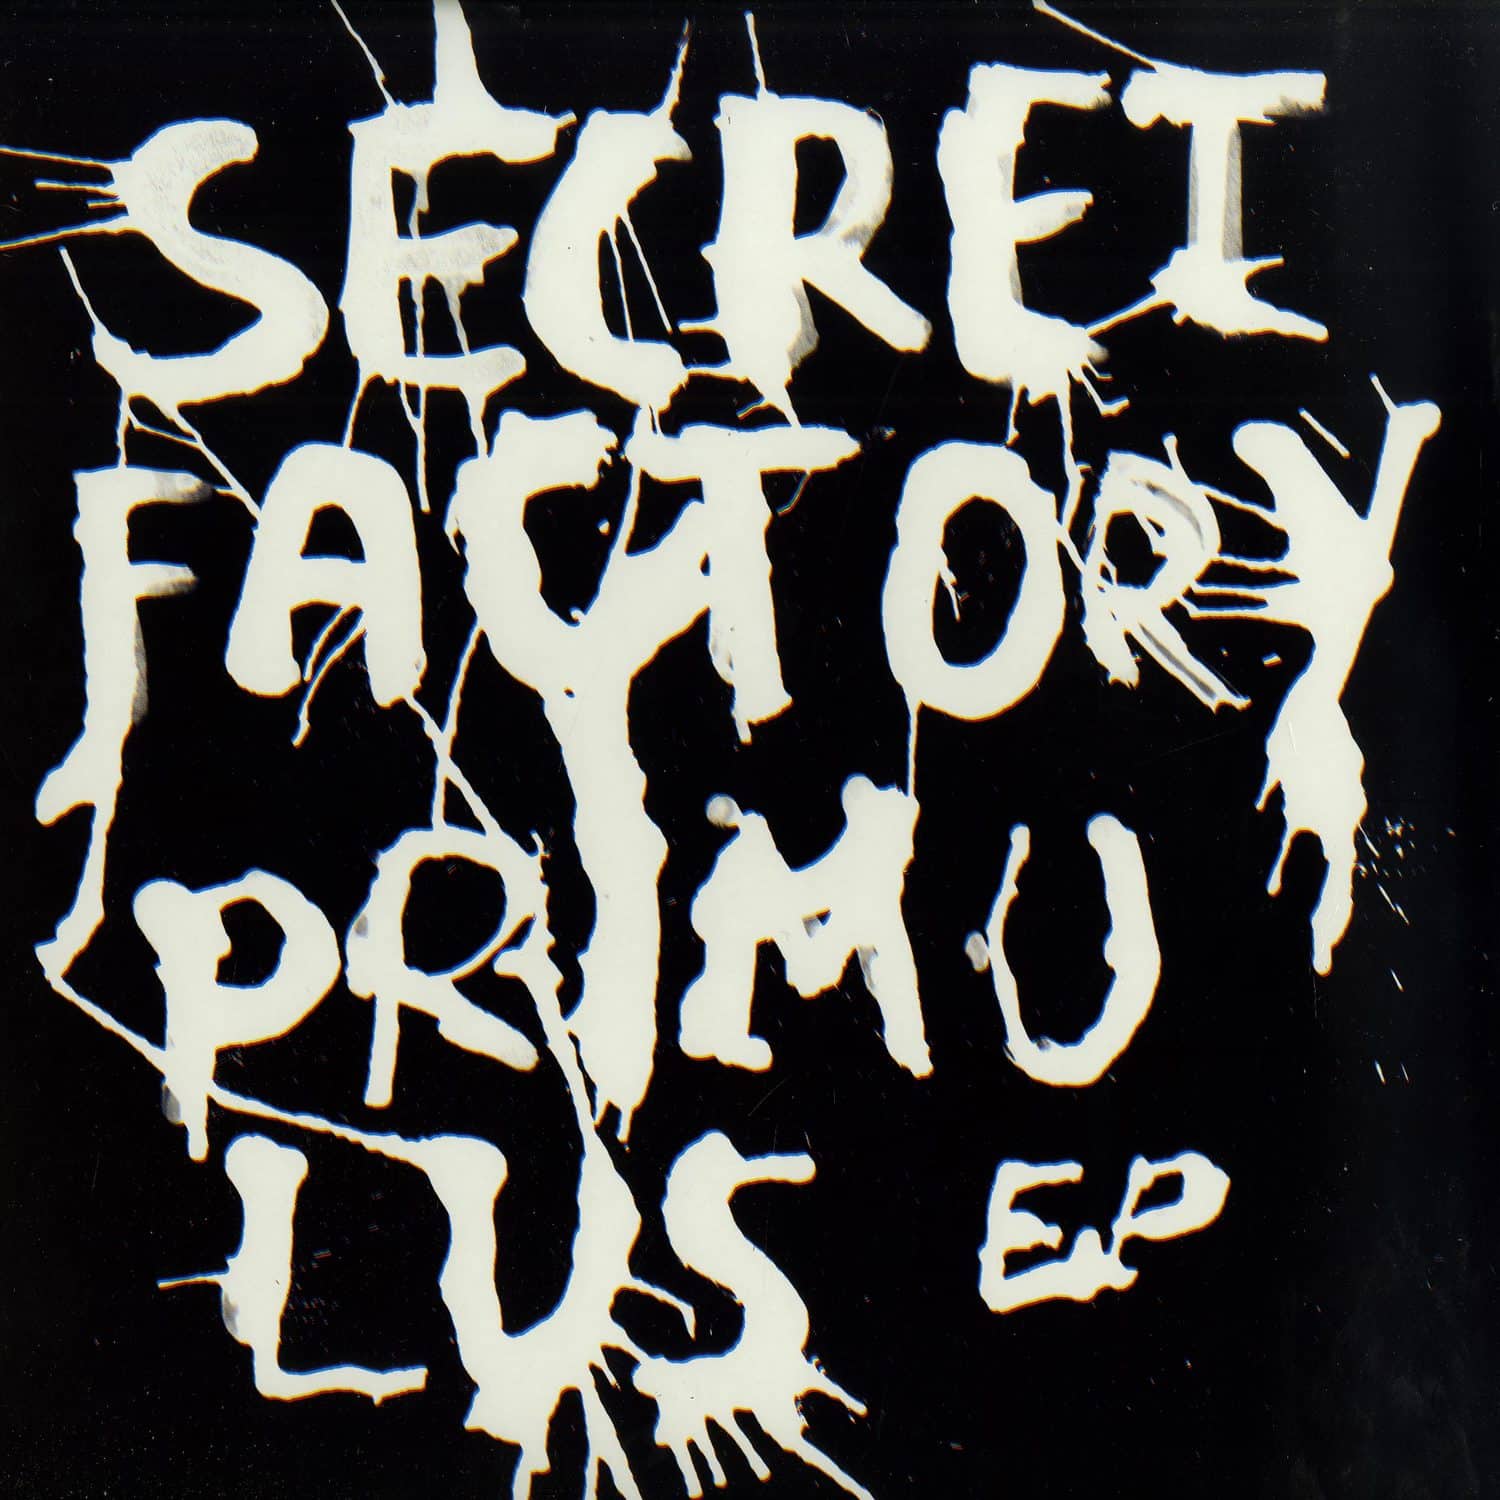 Secret Factory - PRIMULUS EP